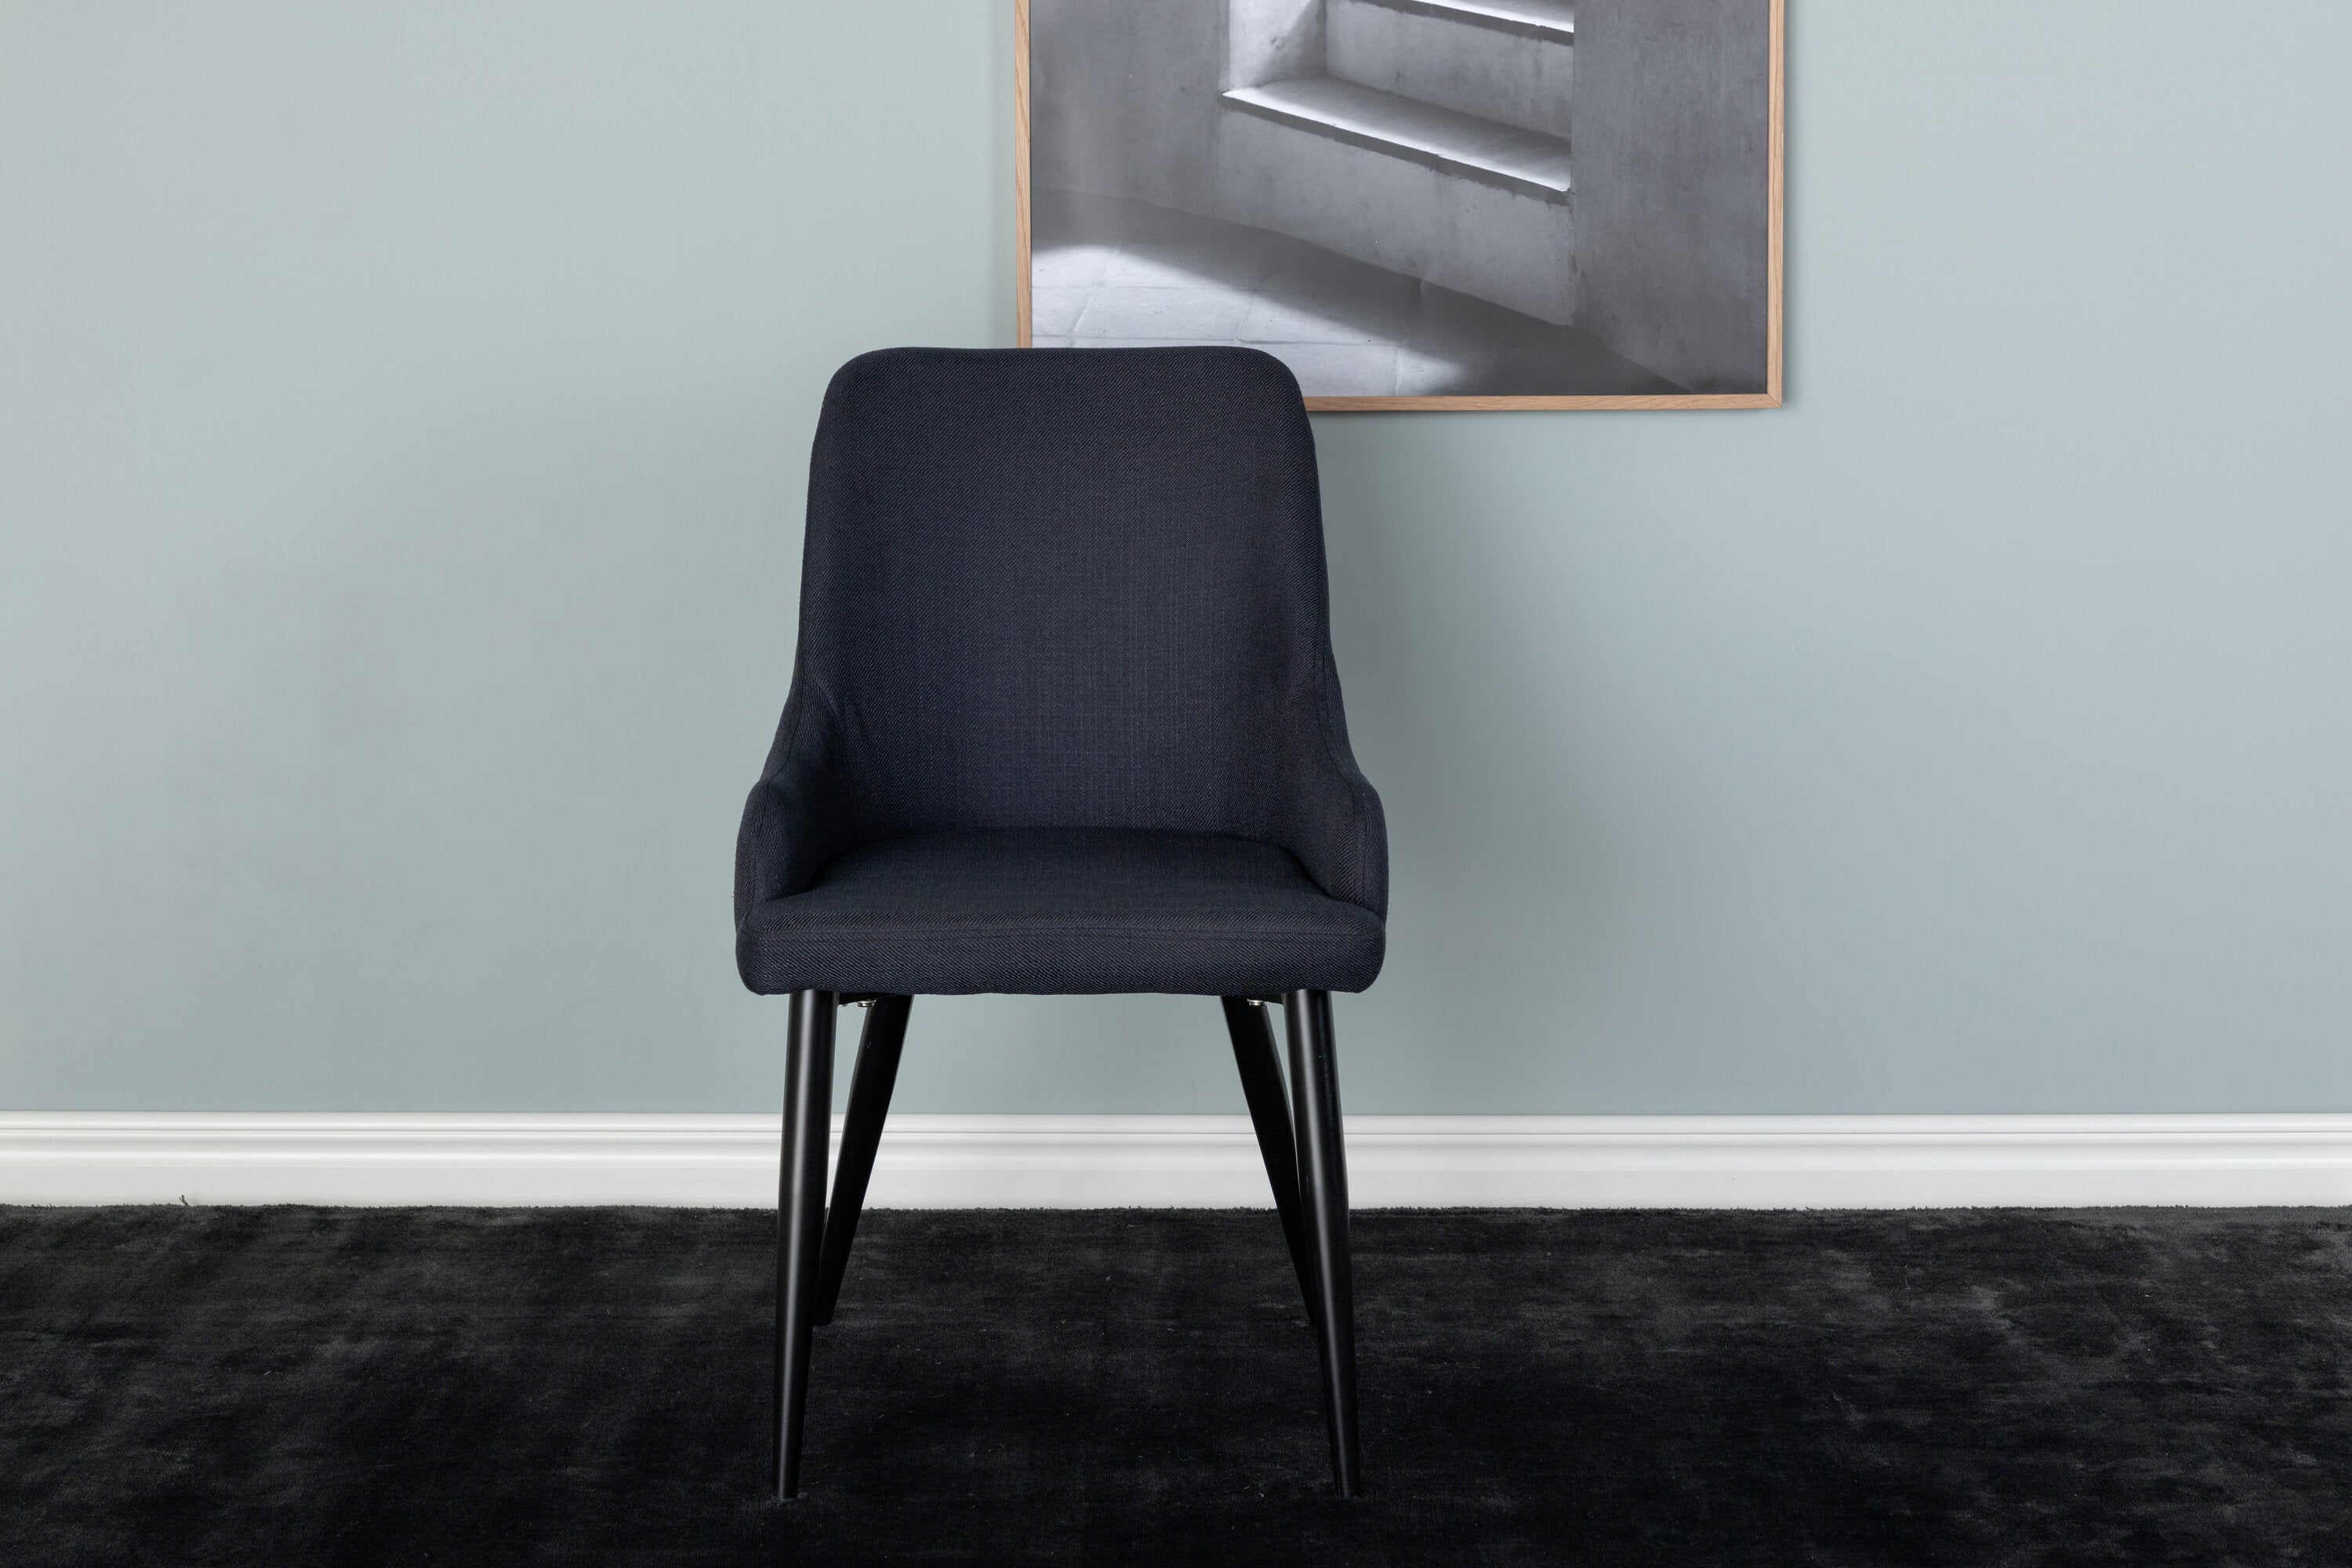 Plaza Stuhl in Schwarz präsentiert im Onlineshop von KAQTU Design AG. Stuhl ist von Venture Home